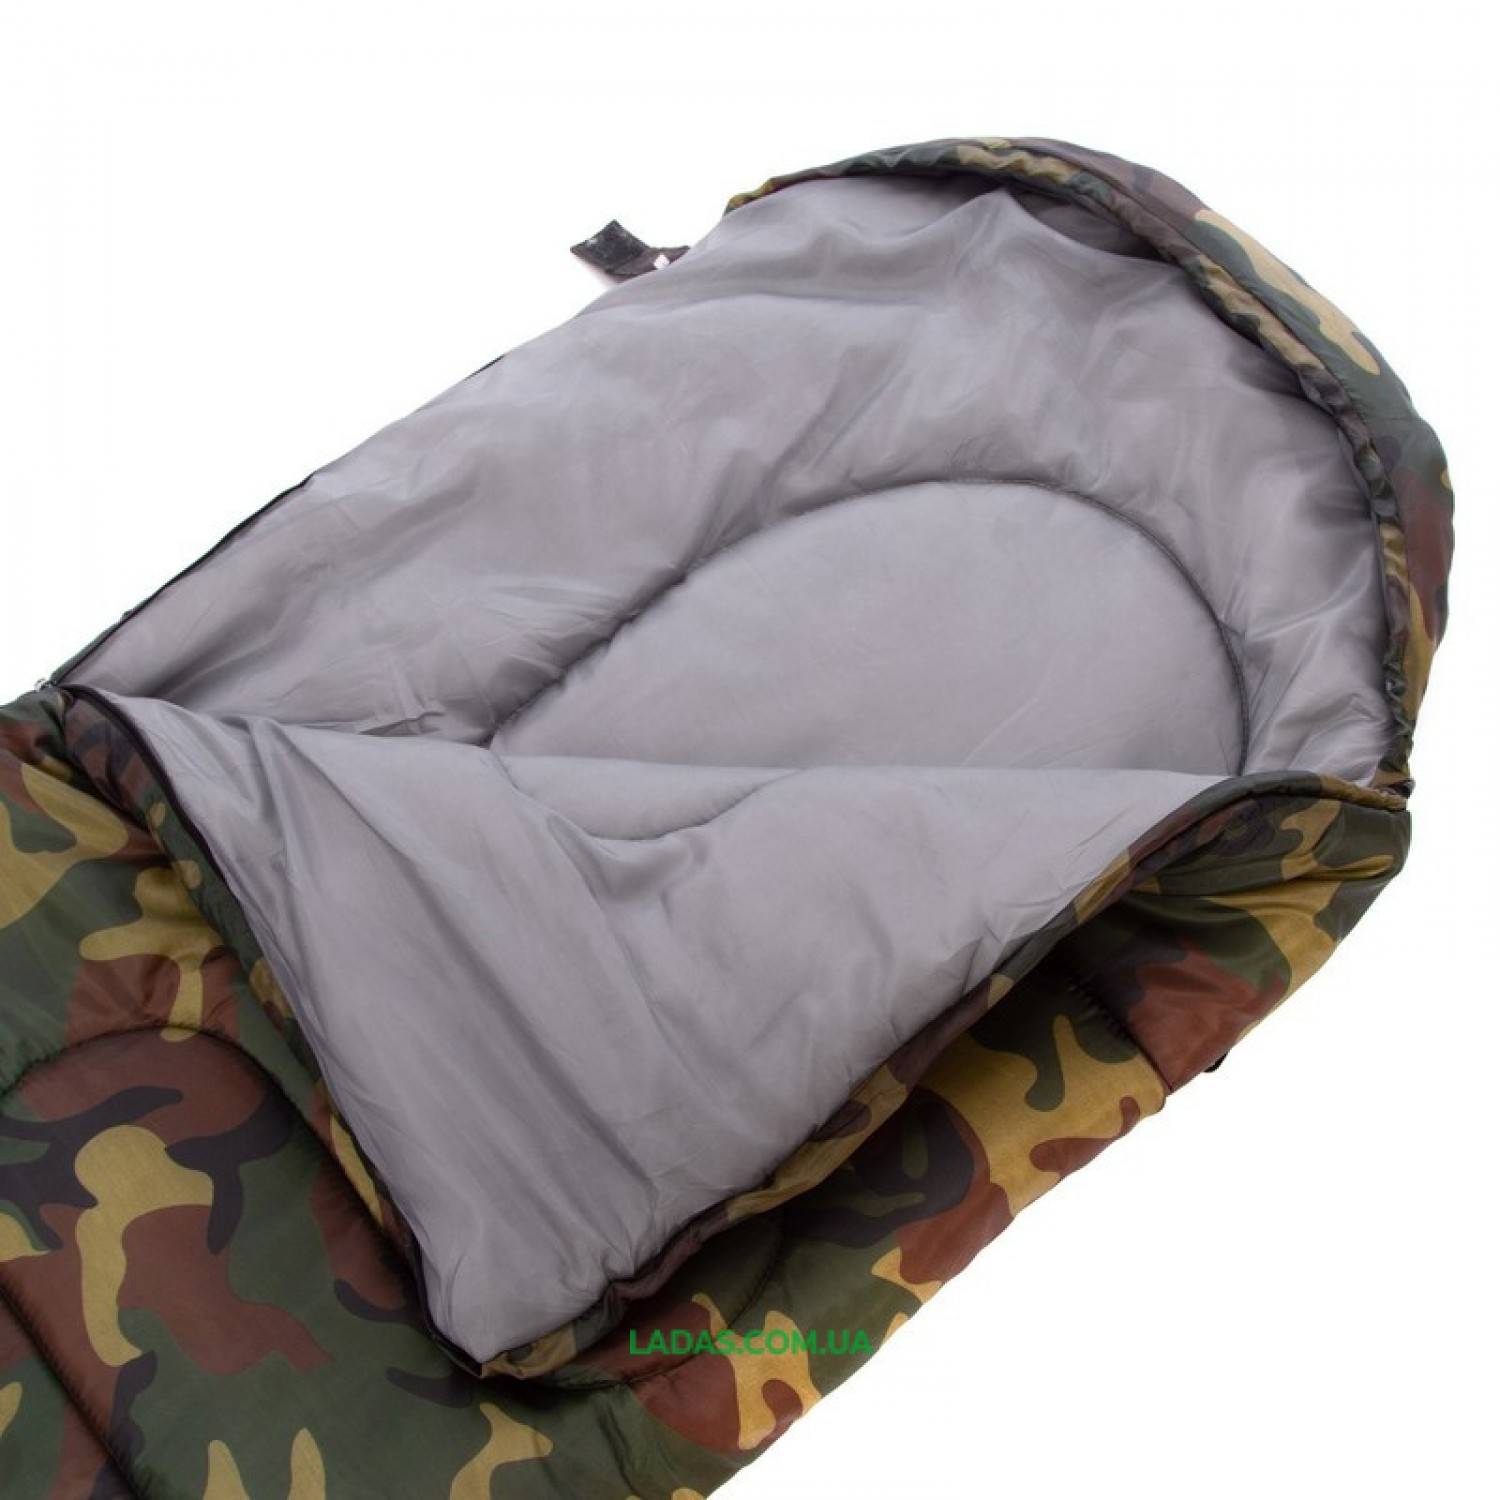 Спальный мешок одеяло с капюшоном камуфляж SY-4062 (PL,хлопок, 500г на м2,р-р 168+32х70см, t+10 до -10)